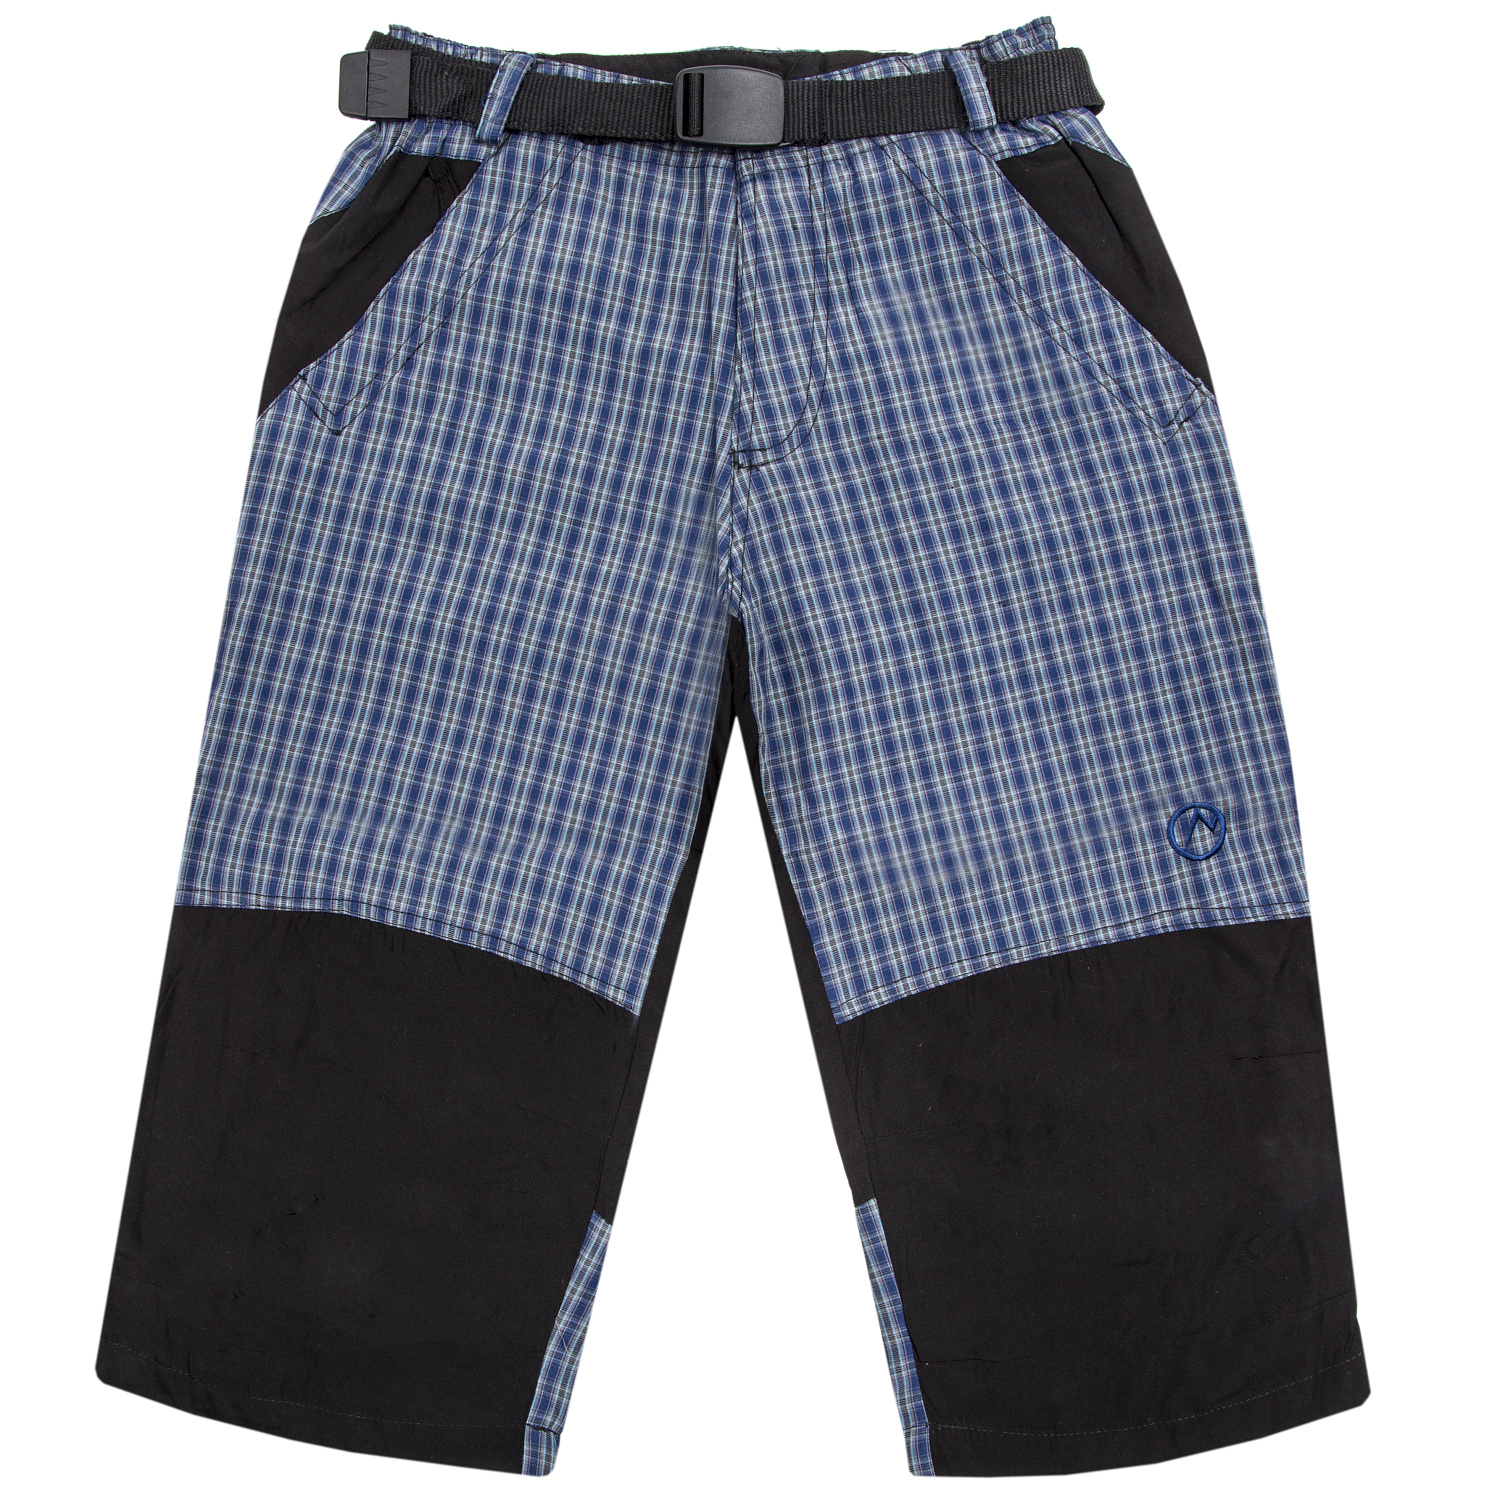 Chlapecké 3/4 plátěné kalhoty - NEVEREST K267, modrá Barva: Modrá, Velikost: 134